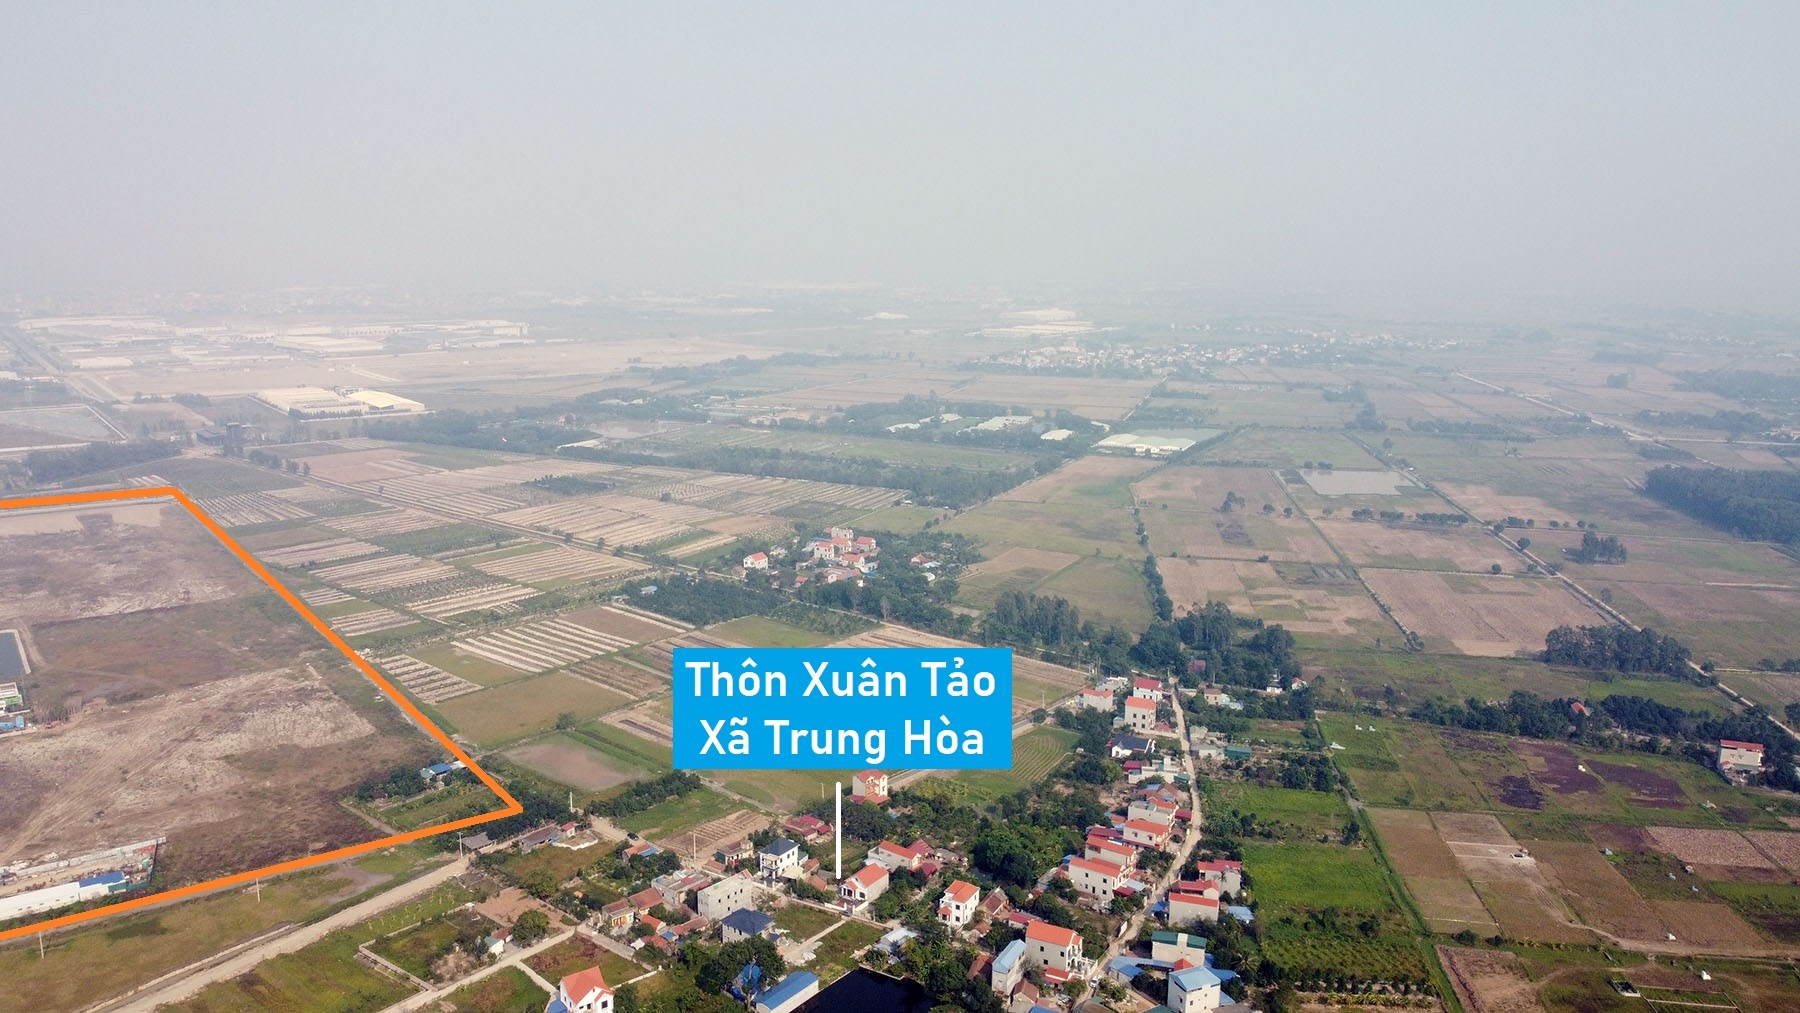 Toàn cảnh KCN và CCN Yên Mỹ gần 330 ha đang xây dựng ở Hưng Yên